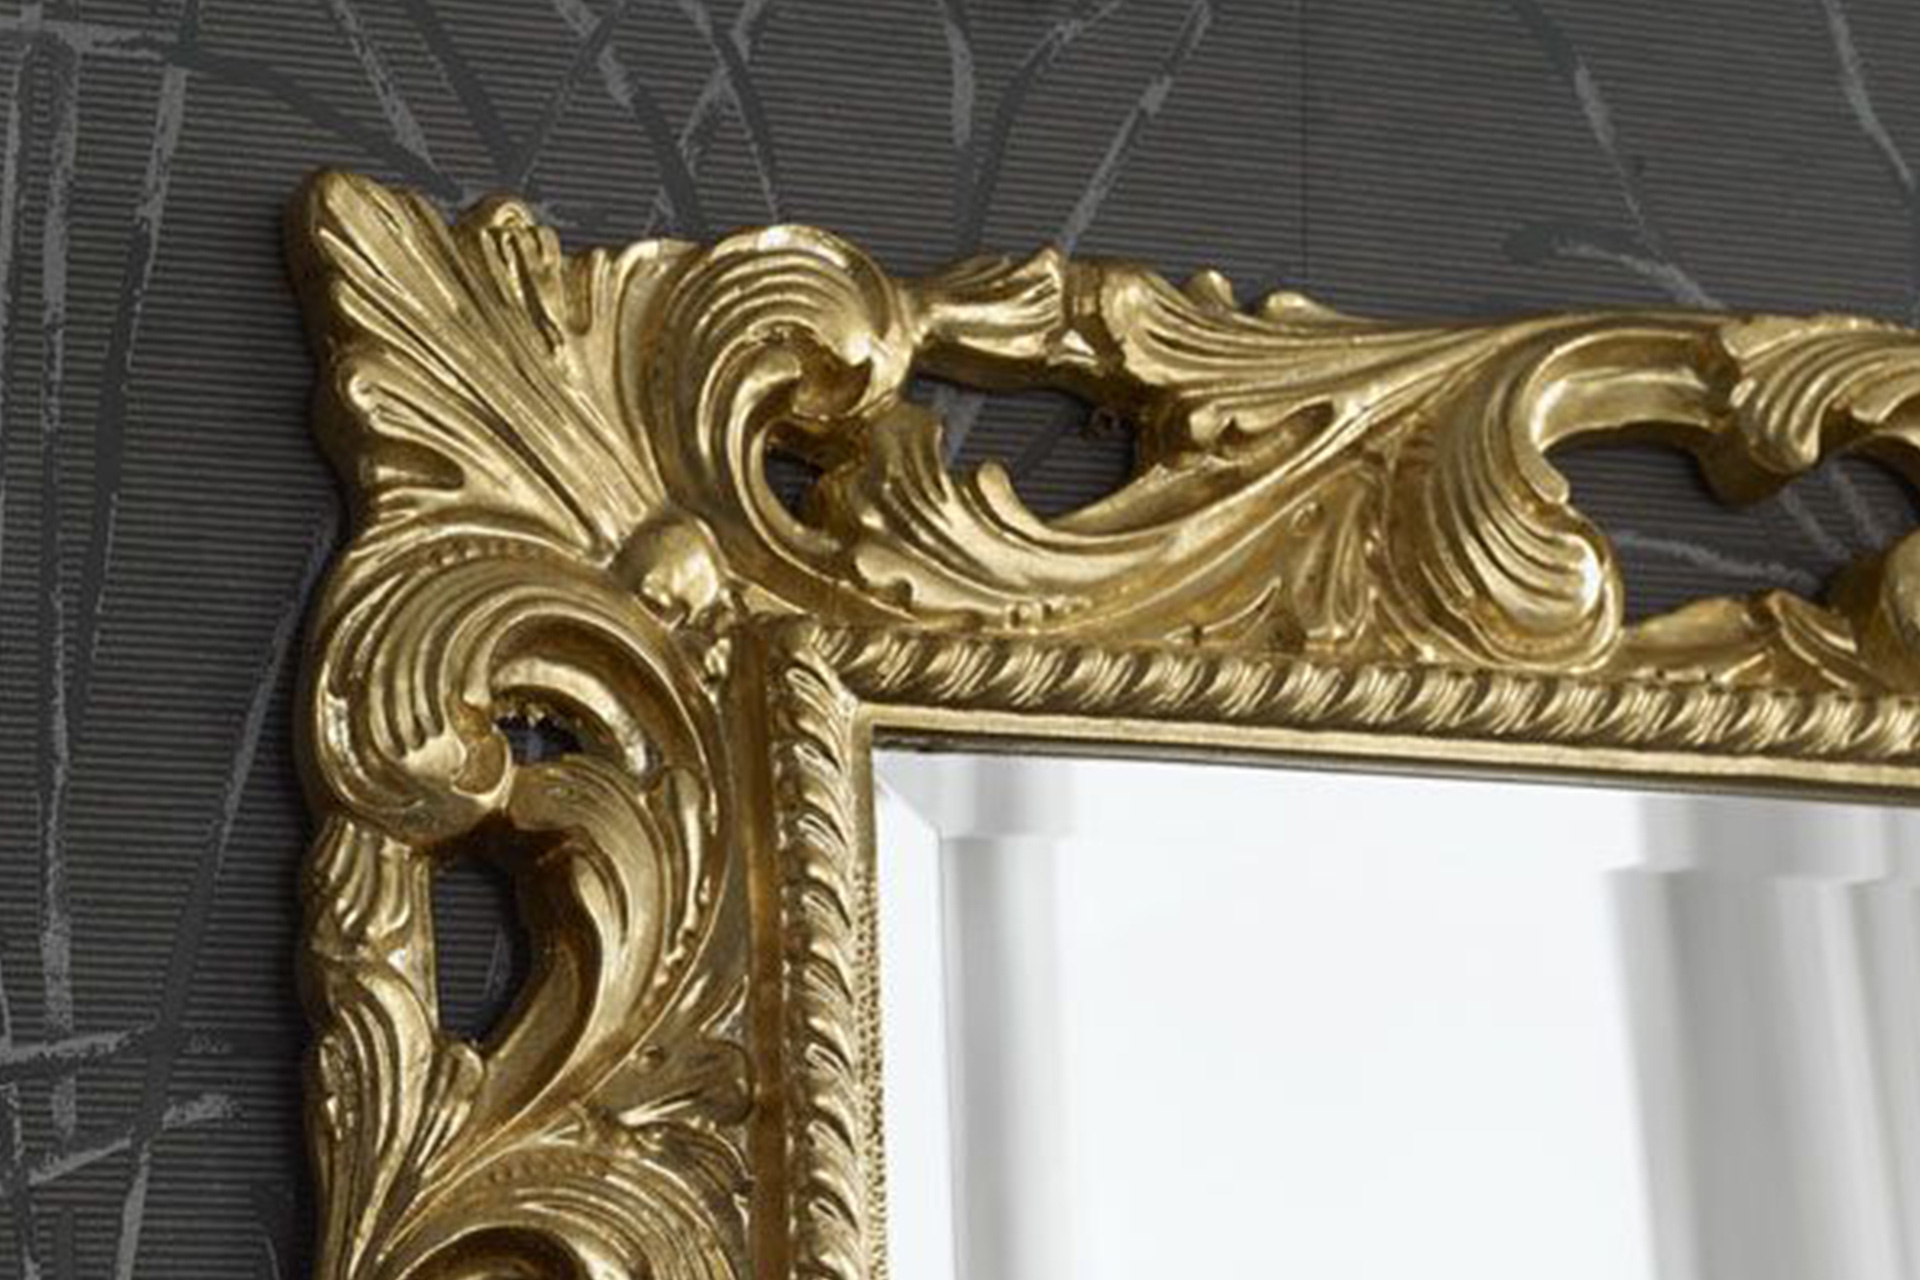 Modell Münster, rechteckig, Farbe: Blattgold, klassisch, Herstellung: ASR-Rahmendesign Material: Holz, Spiegel glatt, Frontansicht Ecke oben